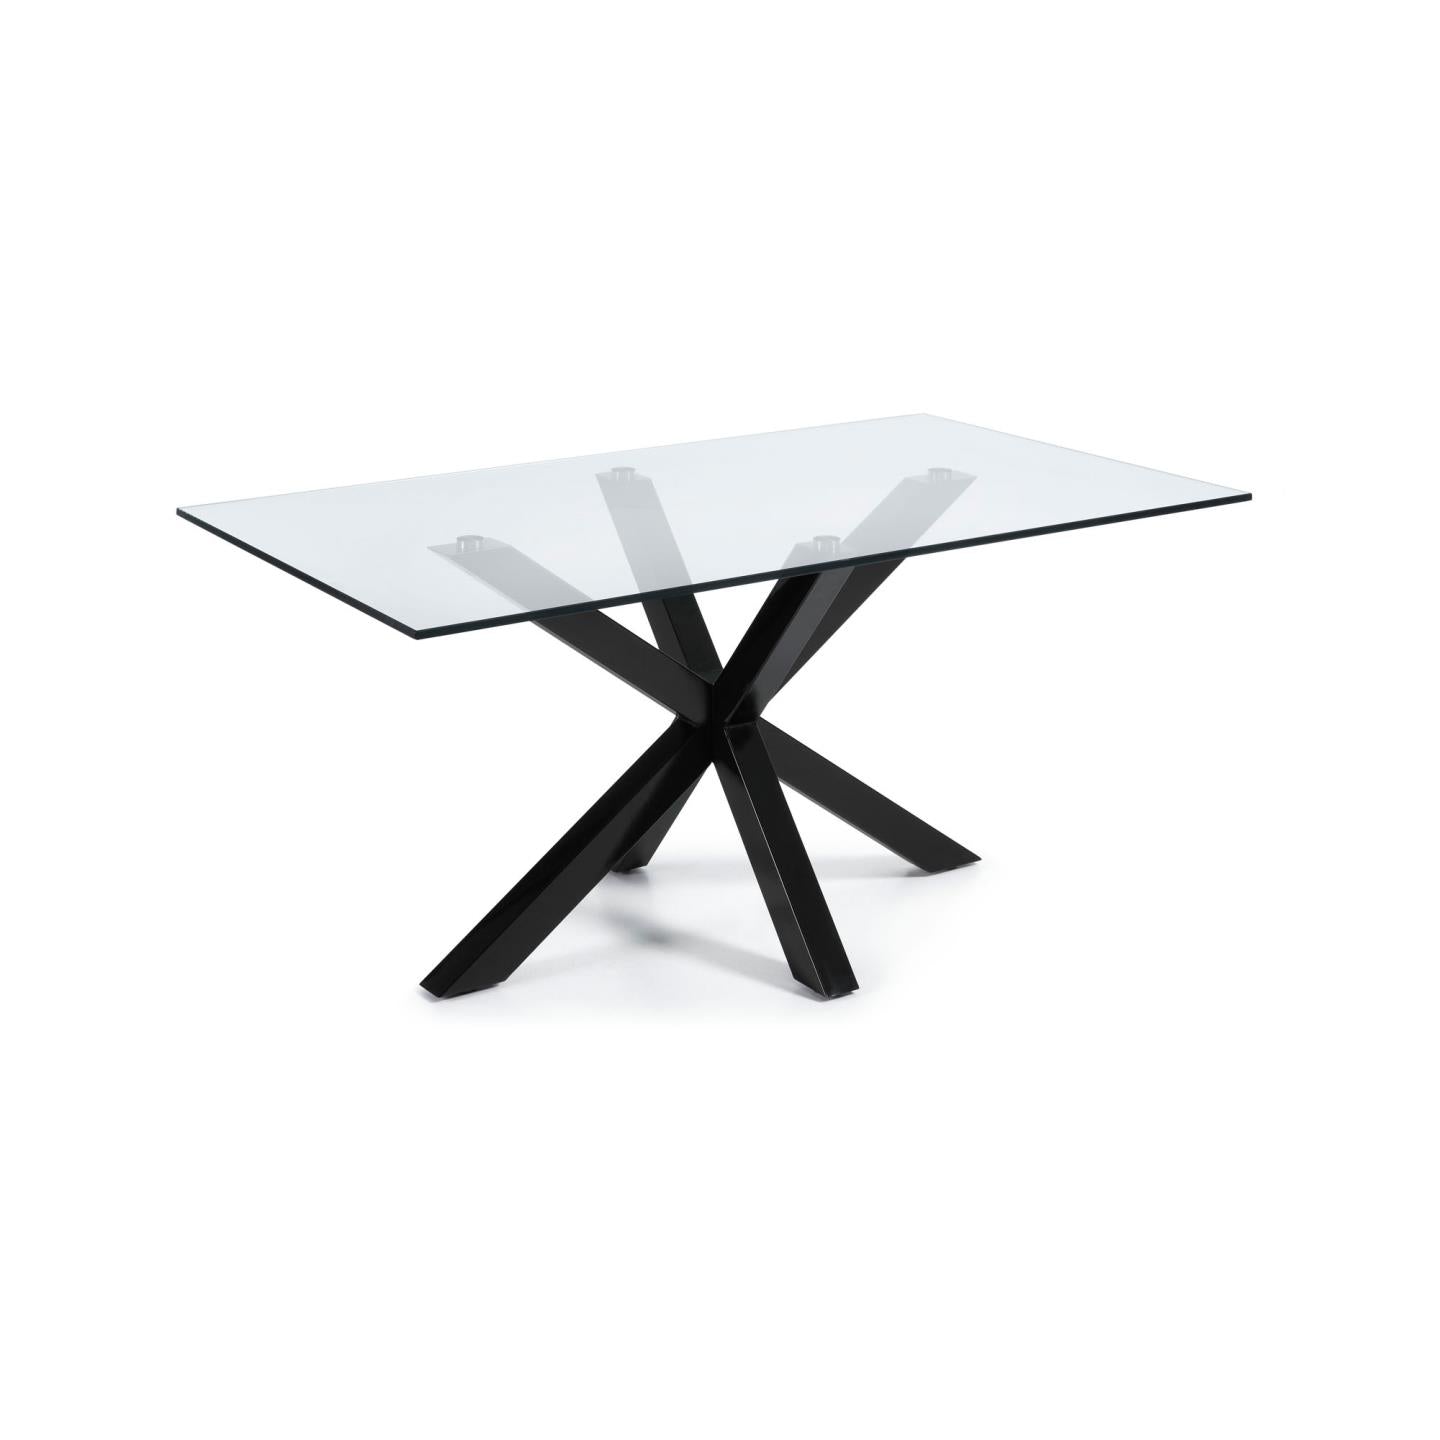 Argo üvegasztal acéllábakkal, fekete színű kivitelben 180 x 100 cm